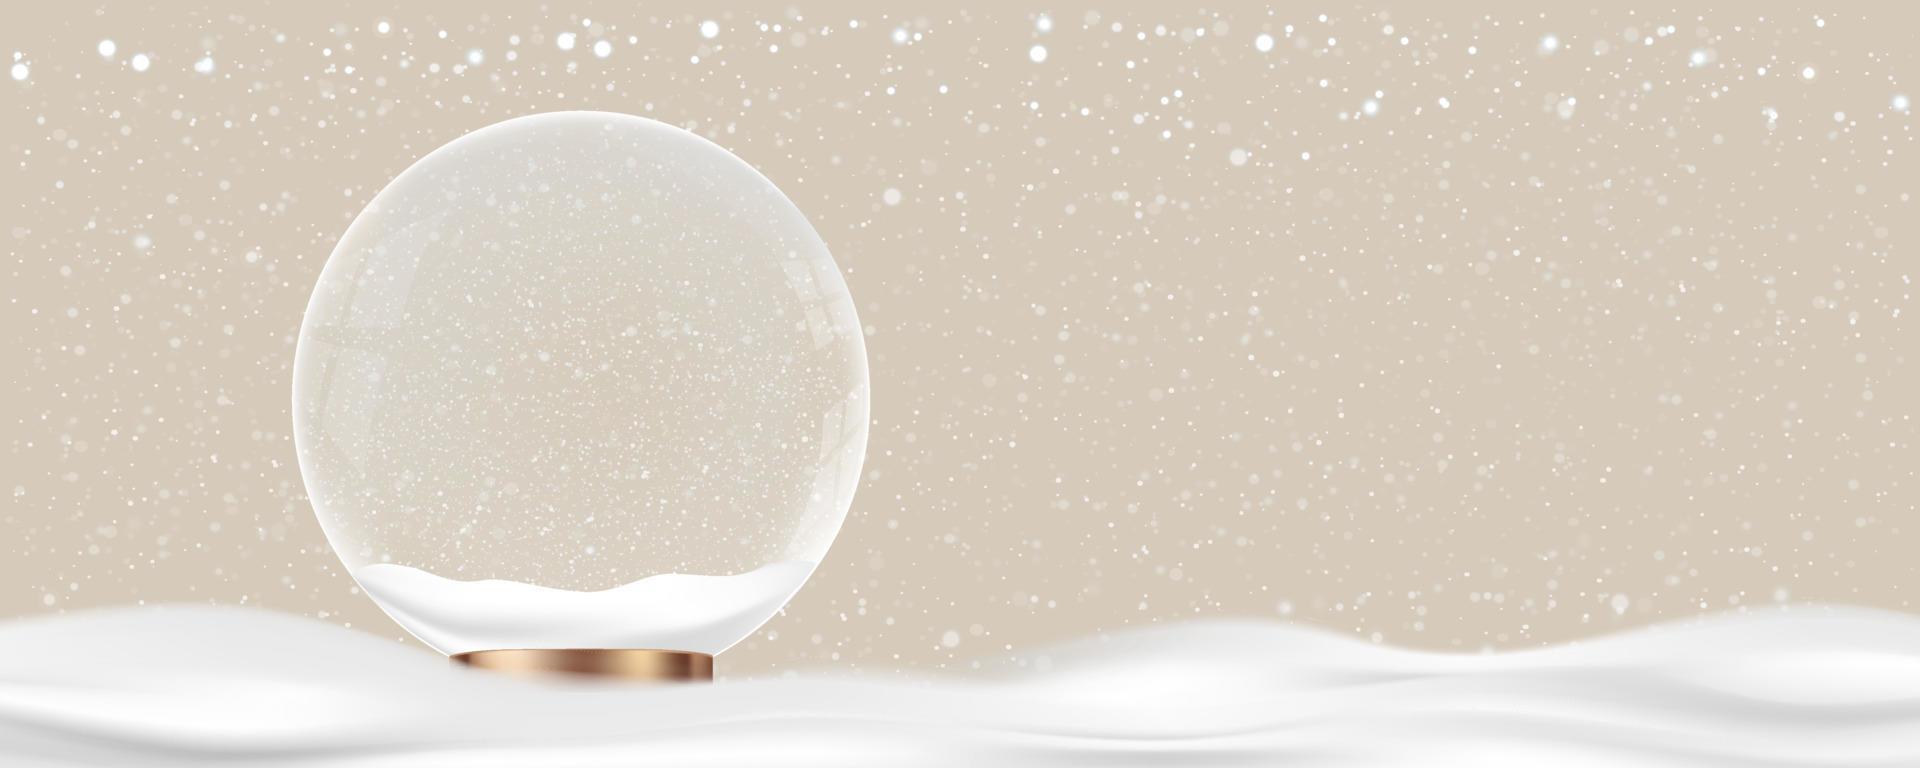 weihnachtskugel mit schnee auf cremefarbenem wandhintergrund, 3d-winterszene mit weihnachtskristalldekoration auf vanillefarbe mit kopierraum, vektorhorizontbanner für weihnachten oder neujahr mit farbtrends 2023 vektor